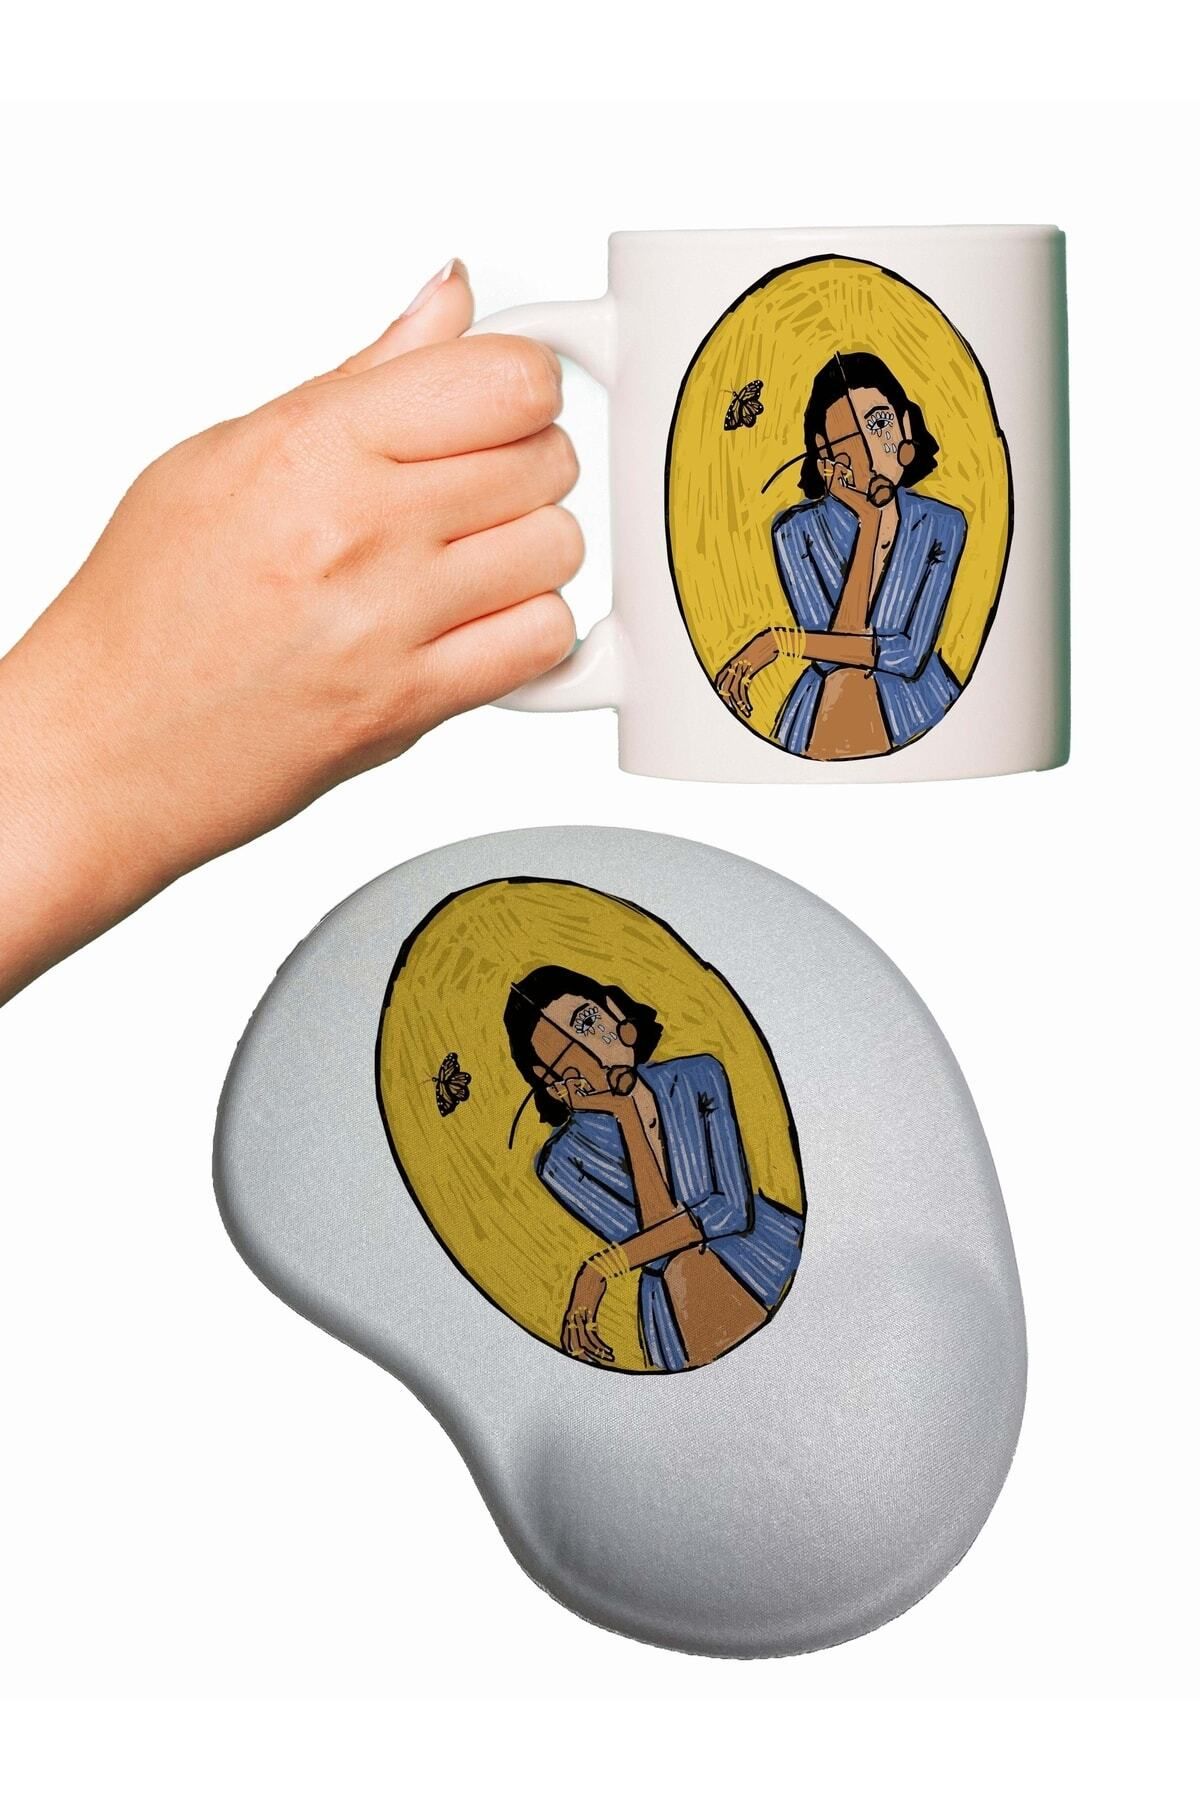 HobiShop Düşünen Kadın Baskılı Mouse Pad + Kupa Bardak Mug